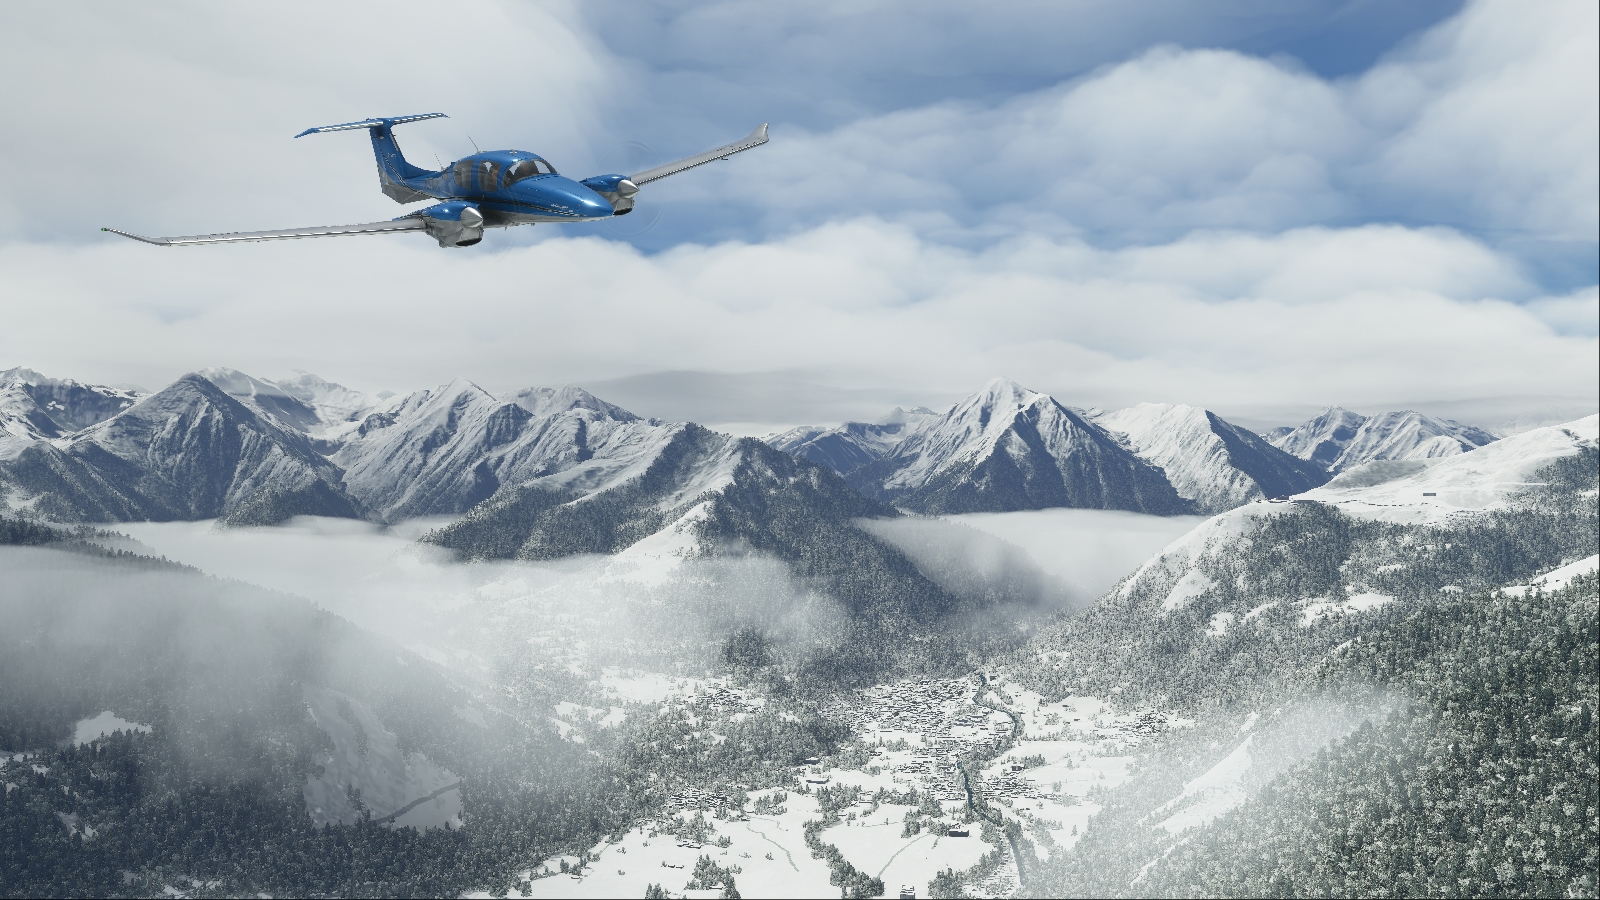 microsoft flight simulator 2020 lanzamiento da62 mountains 7k snow